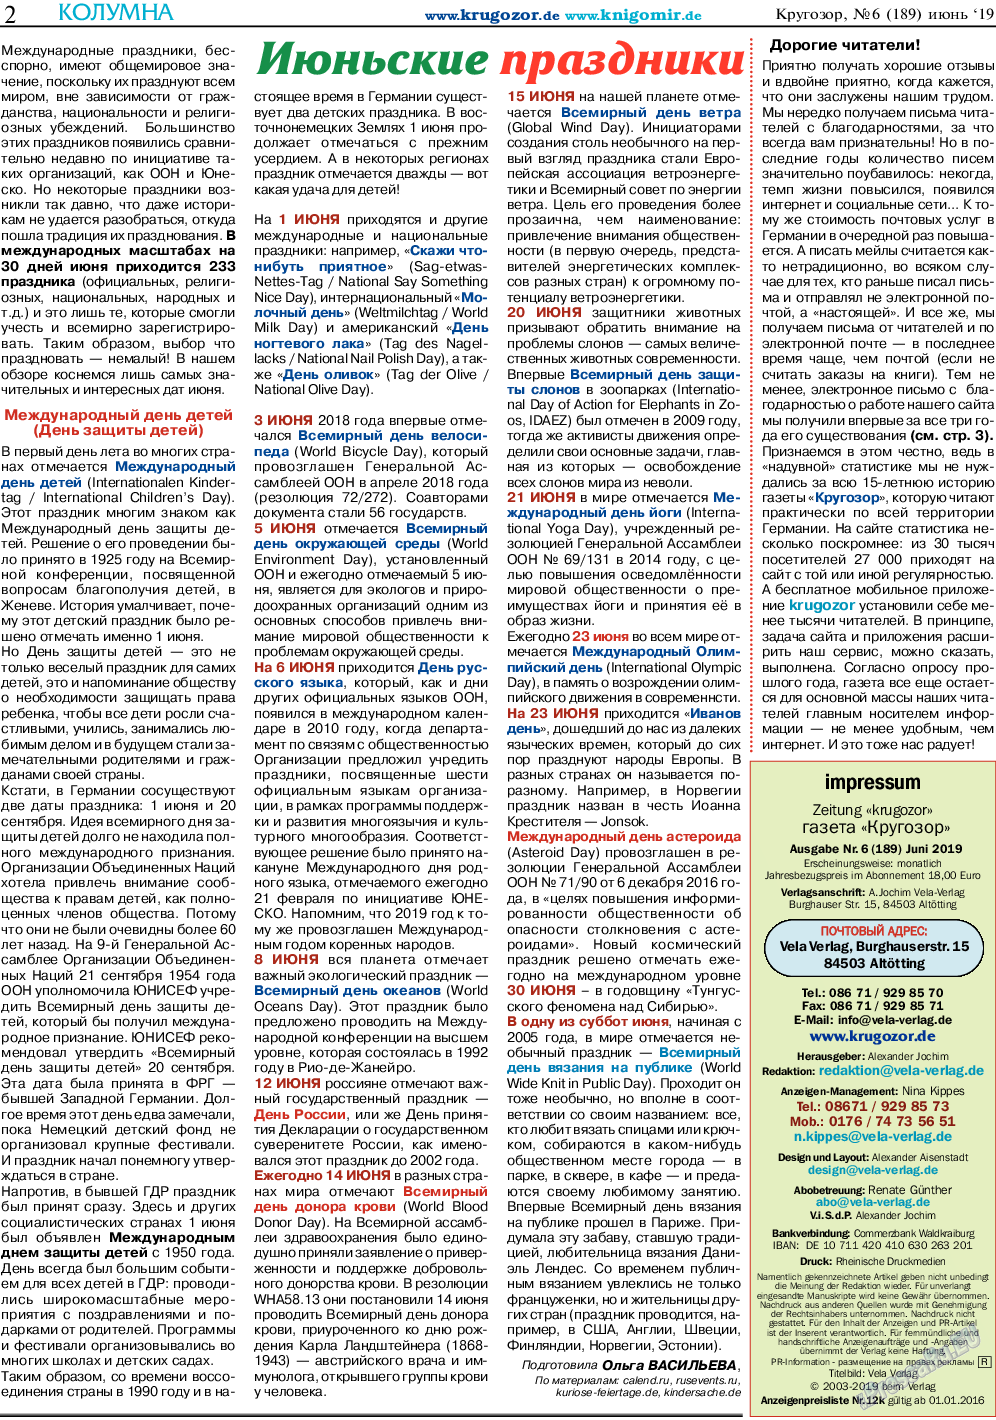 Кругозор (газета). 2019 год, номер 6, стр. 2